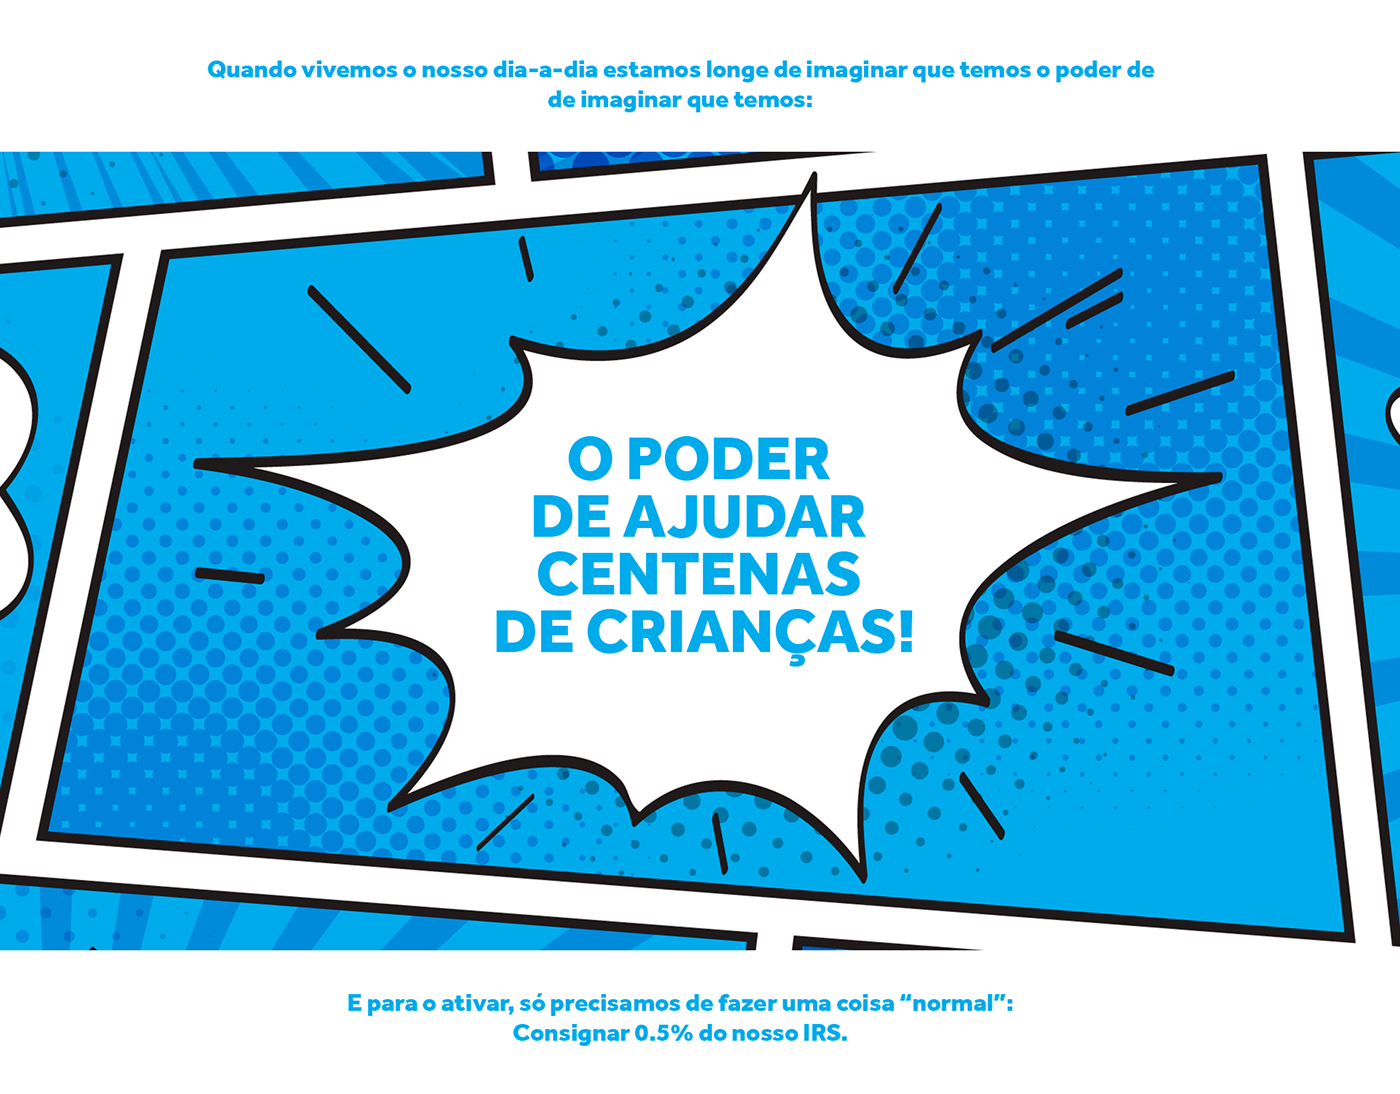 AldeiasSOS campanha design heros Portugal Reprise super heros TOMAS ALMEIDA